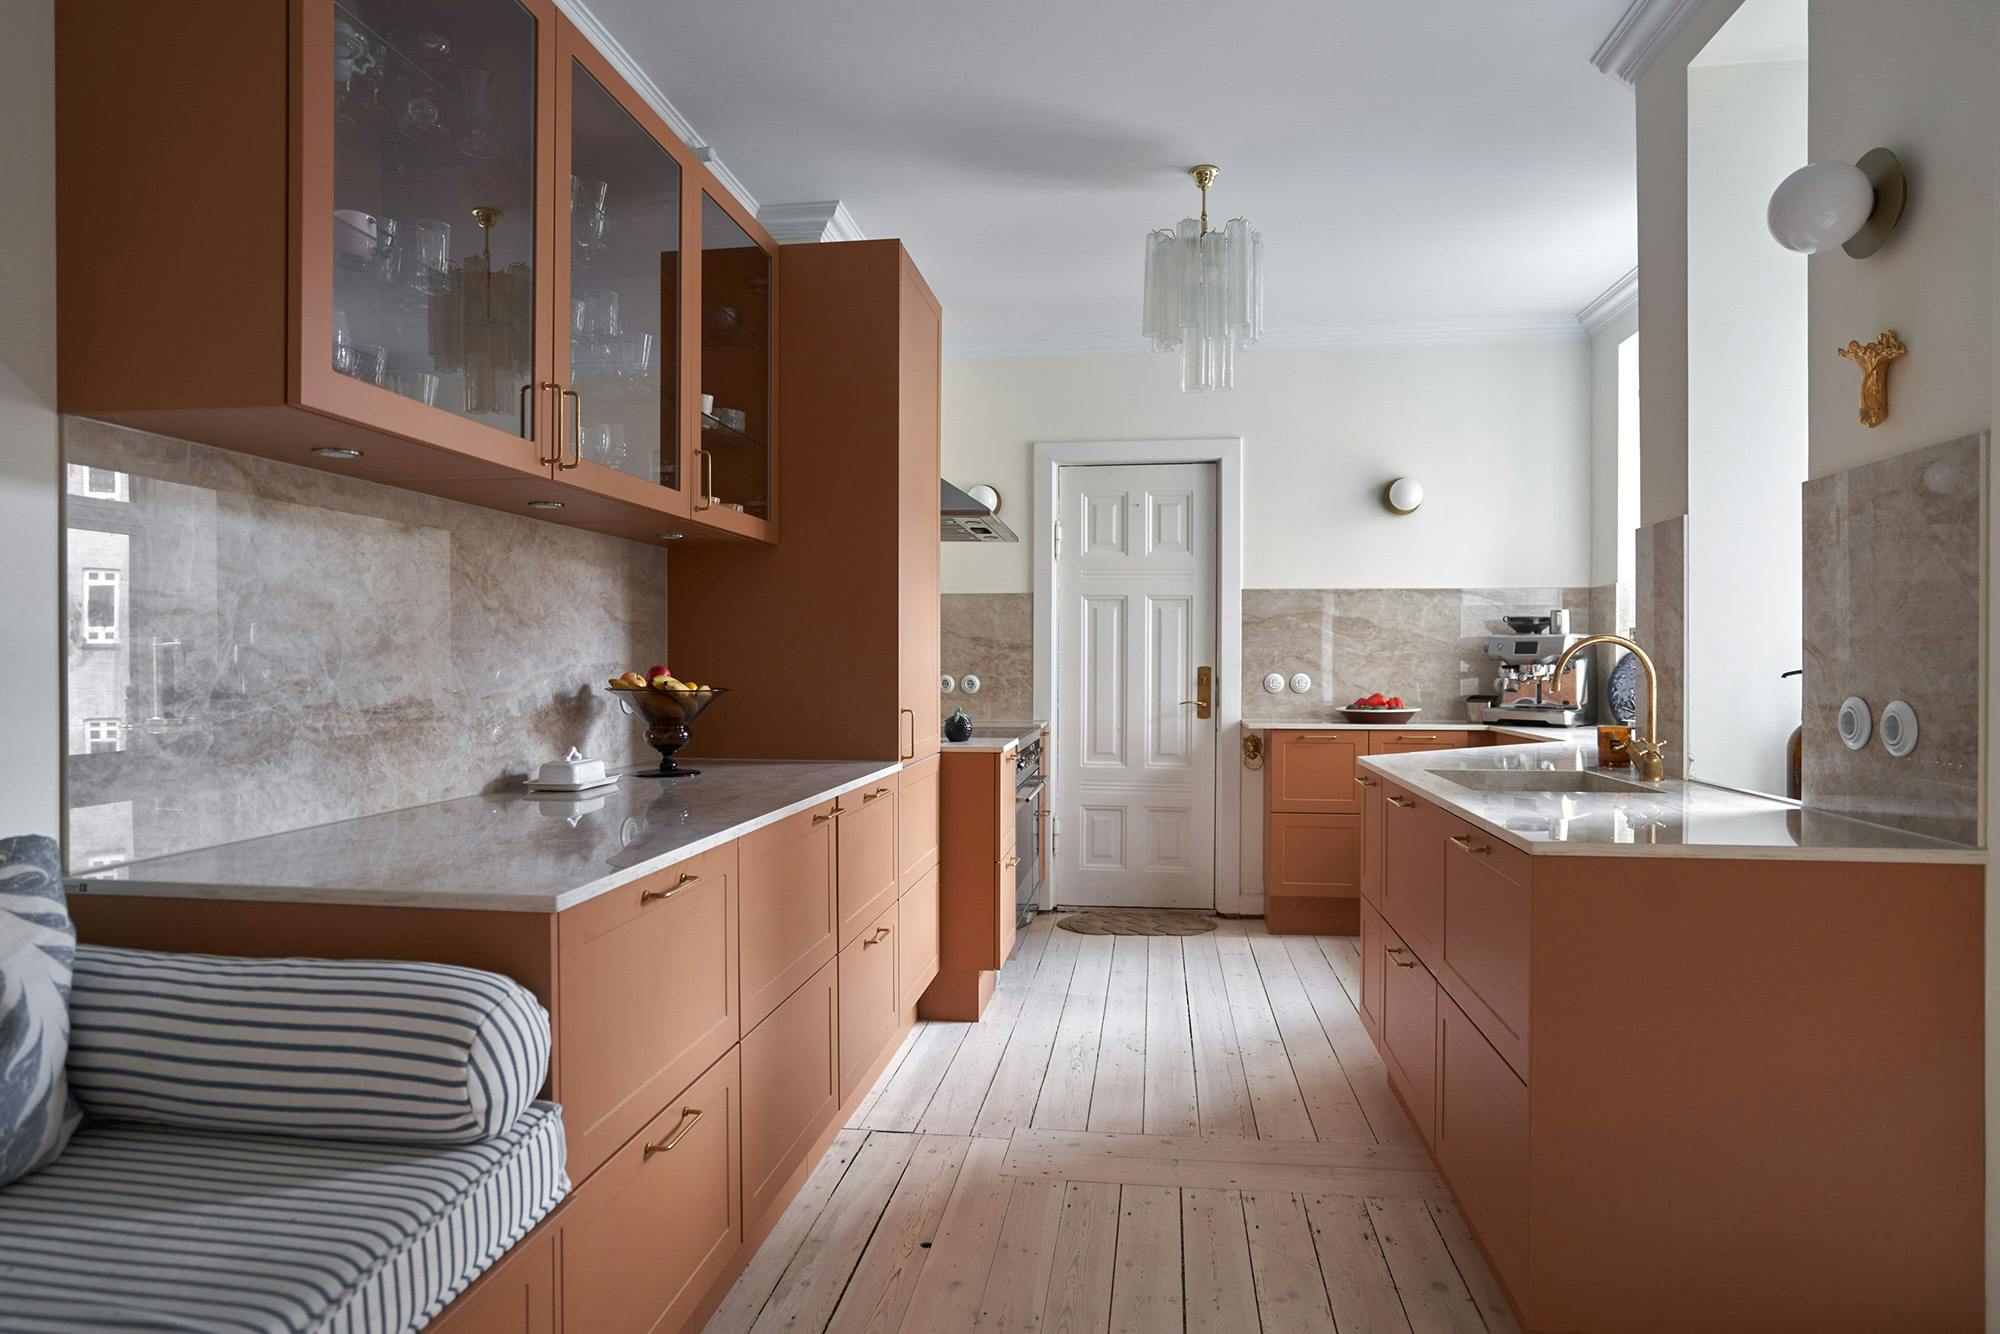 Numéro d'image 35 de la section actuelle de Kitchen renovation in a house build in period architecture of the 60’es de Cosentino France